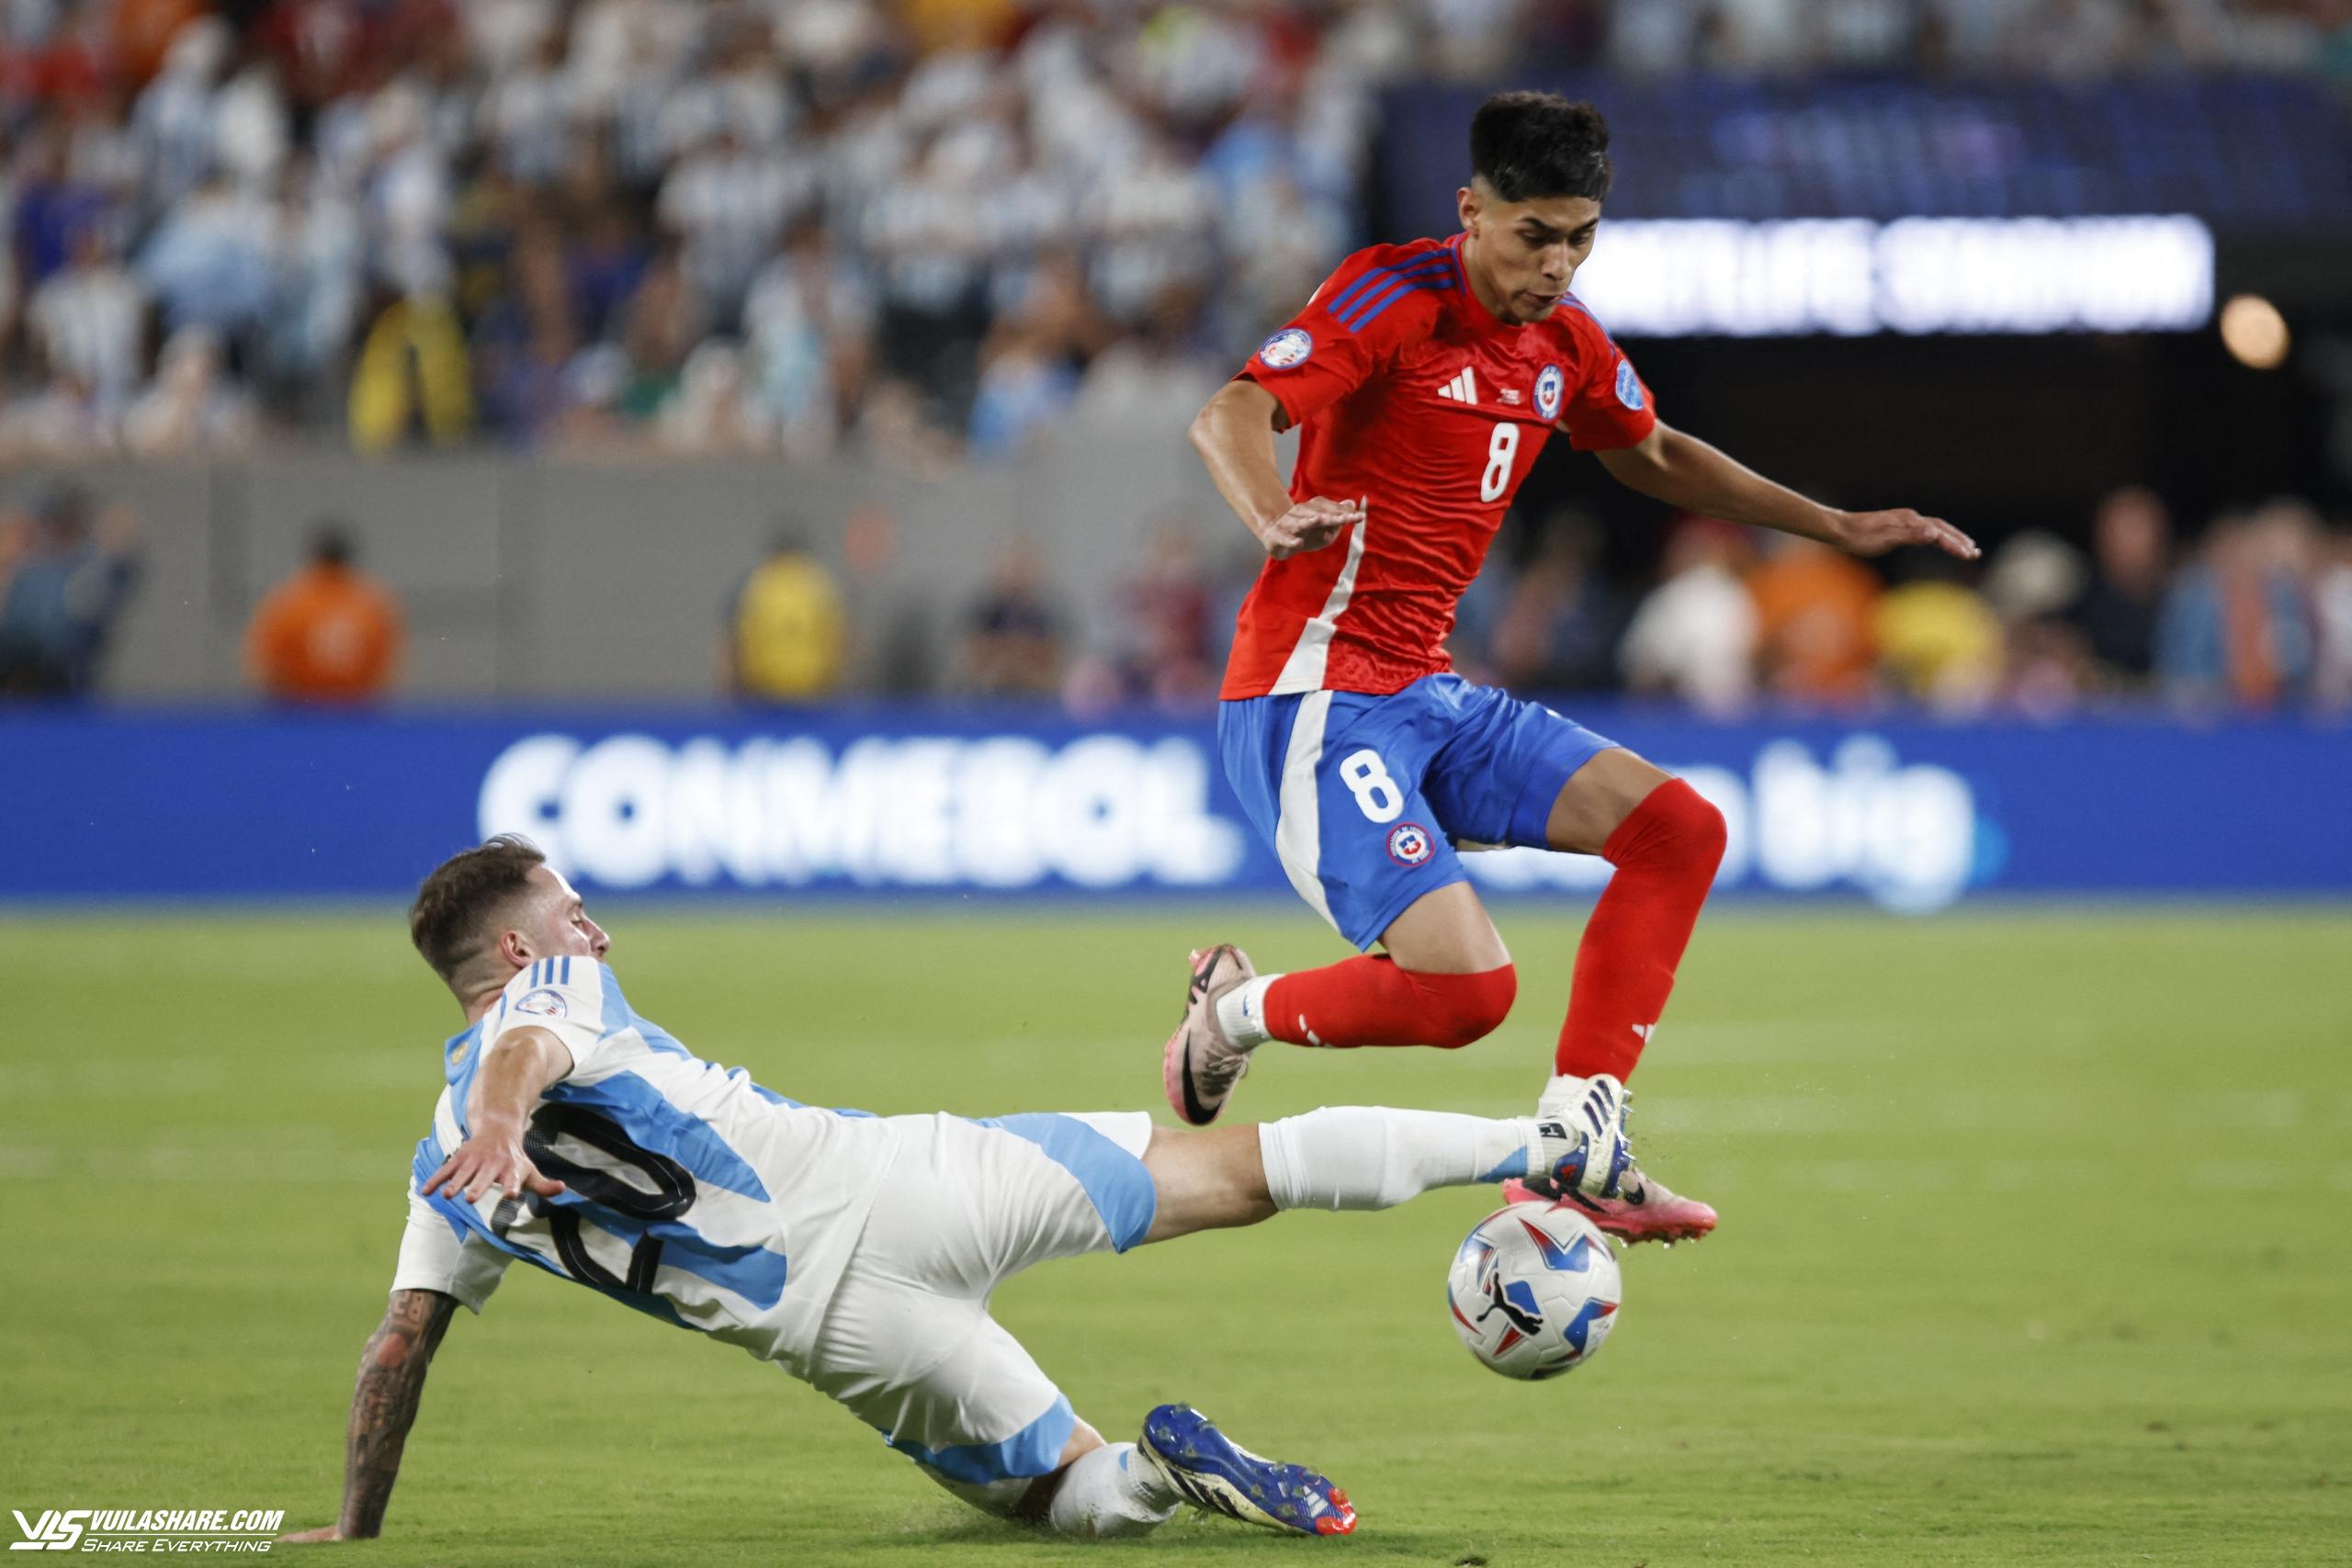 Lịch thi đấu Copa America ngày 30.6: Messi và Argentina 'dạo chơi', Chile và Canada quyết đấu- Ảnh 2.